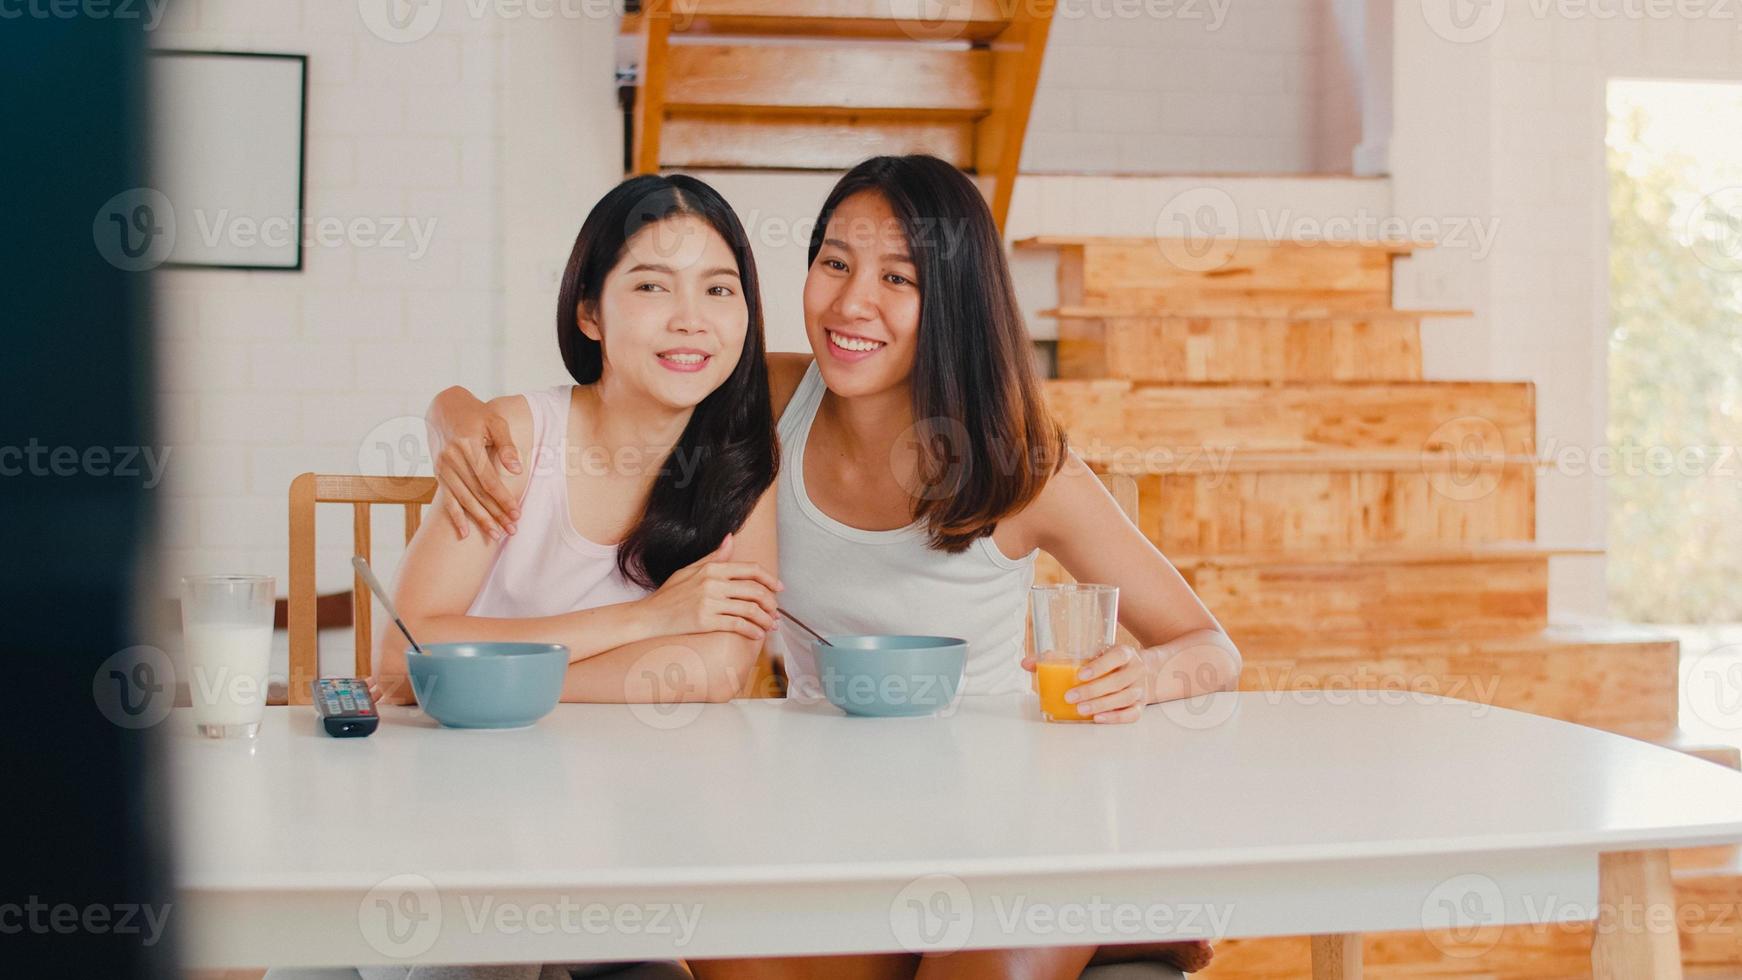 la pareja de mujeres lesbianas lgbtq asiáticas desayuna en casa, las jóvenes amantes de asia felices viendo la televisión mientras beben jugo, cereal de hojuelas de maíz y leche en un tazón en la mesa de la cocina en el concepto de la mañana. foto